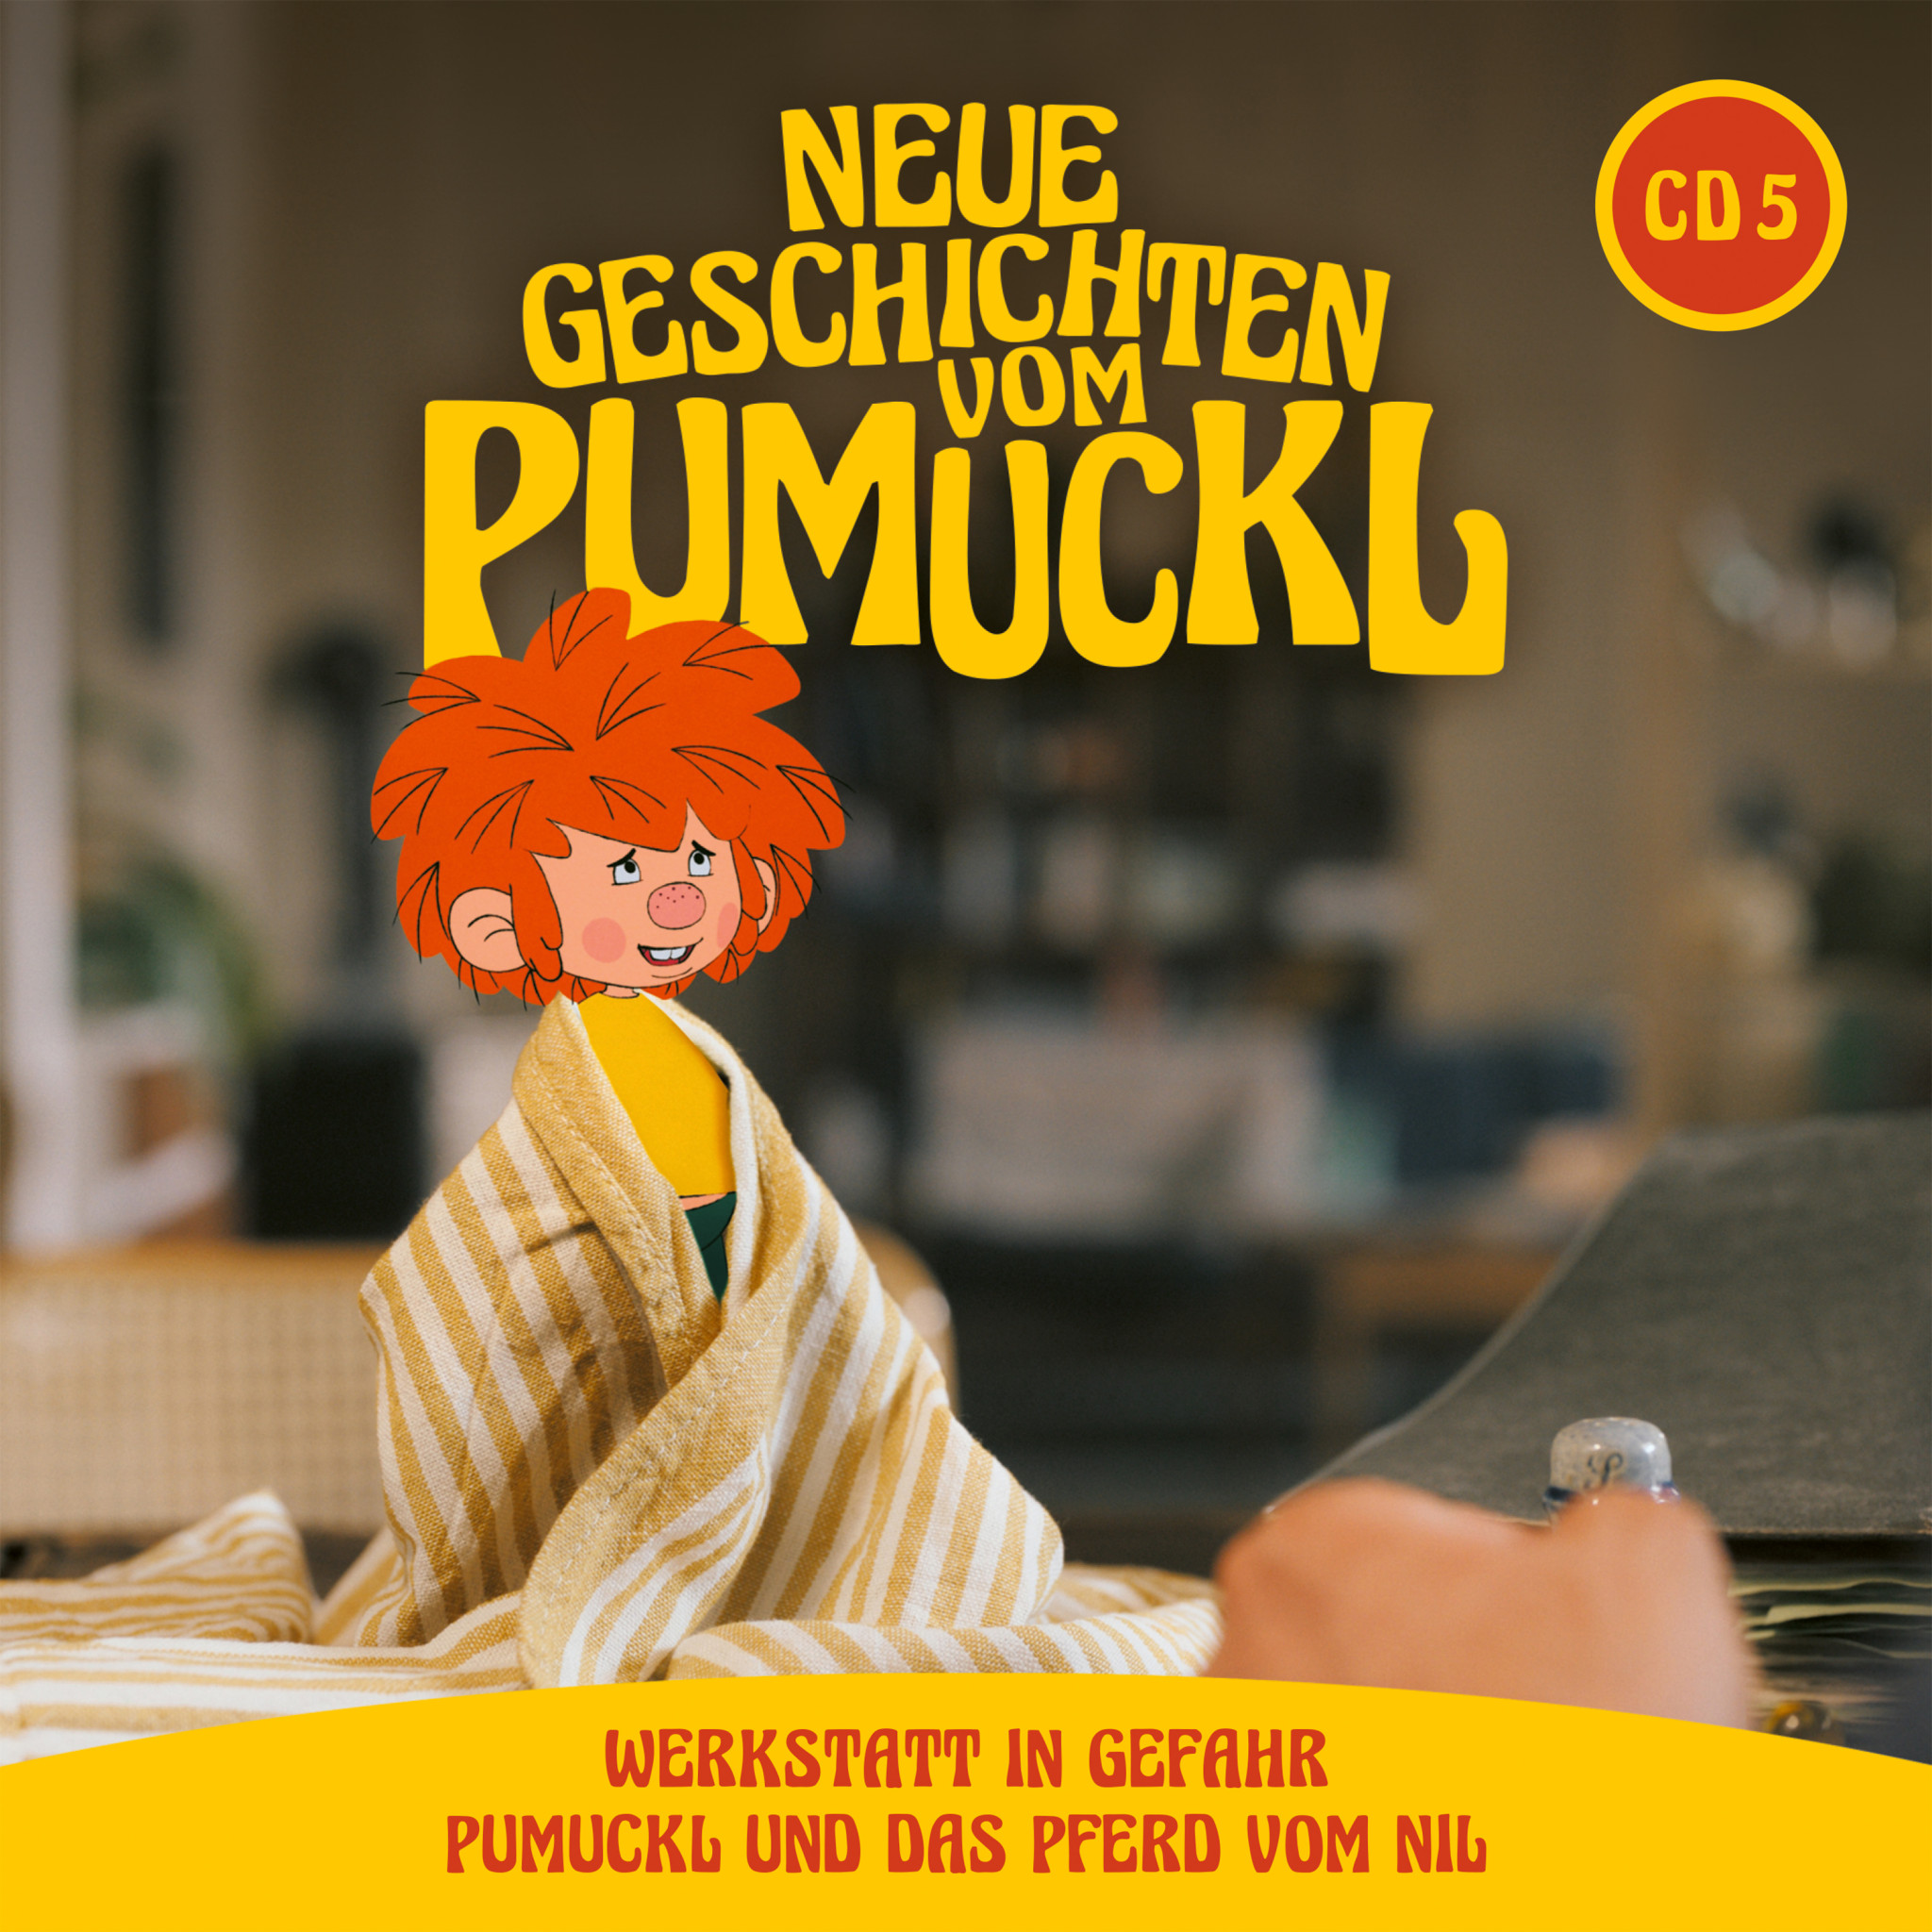 Neue Geschichten vom Pumuckl - CD 5 (Folge 09 + 10) Cover JPG.jpg